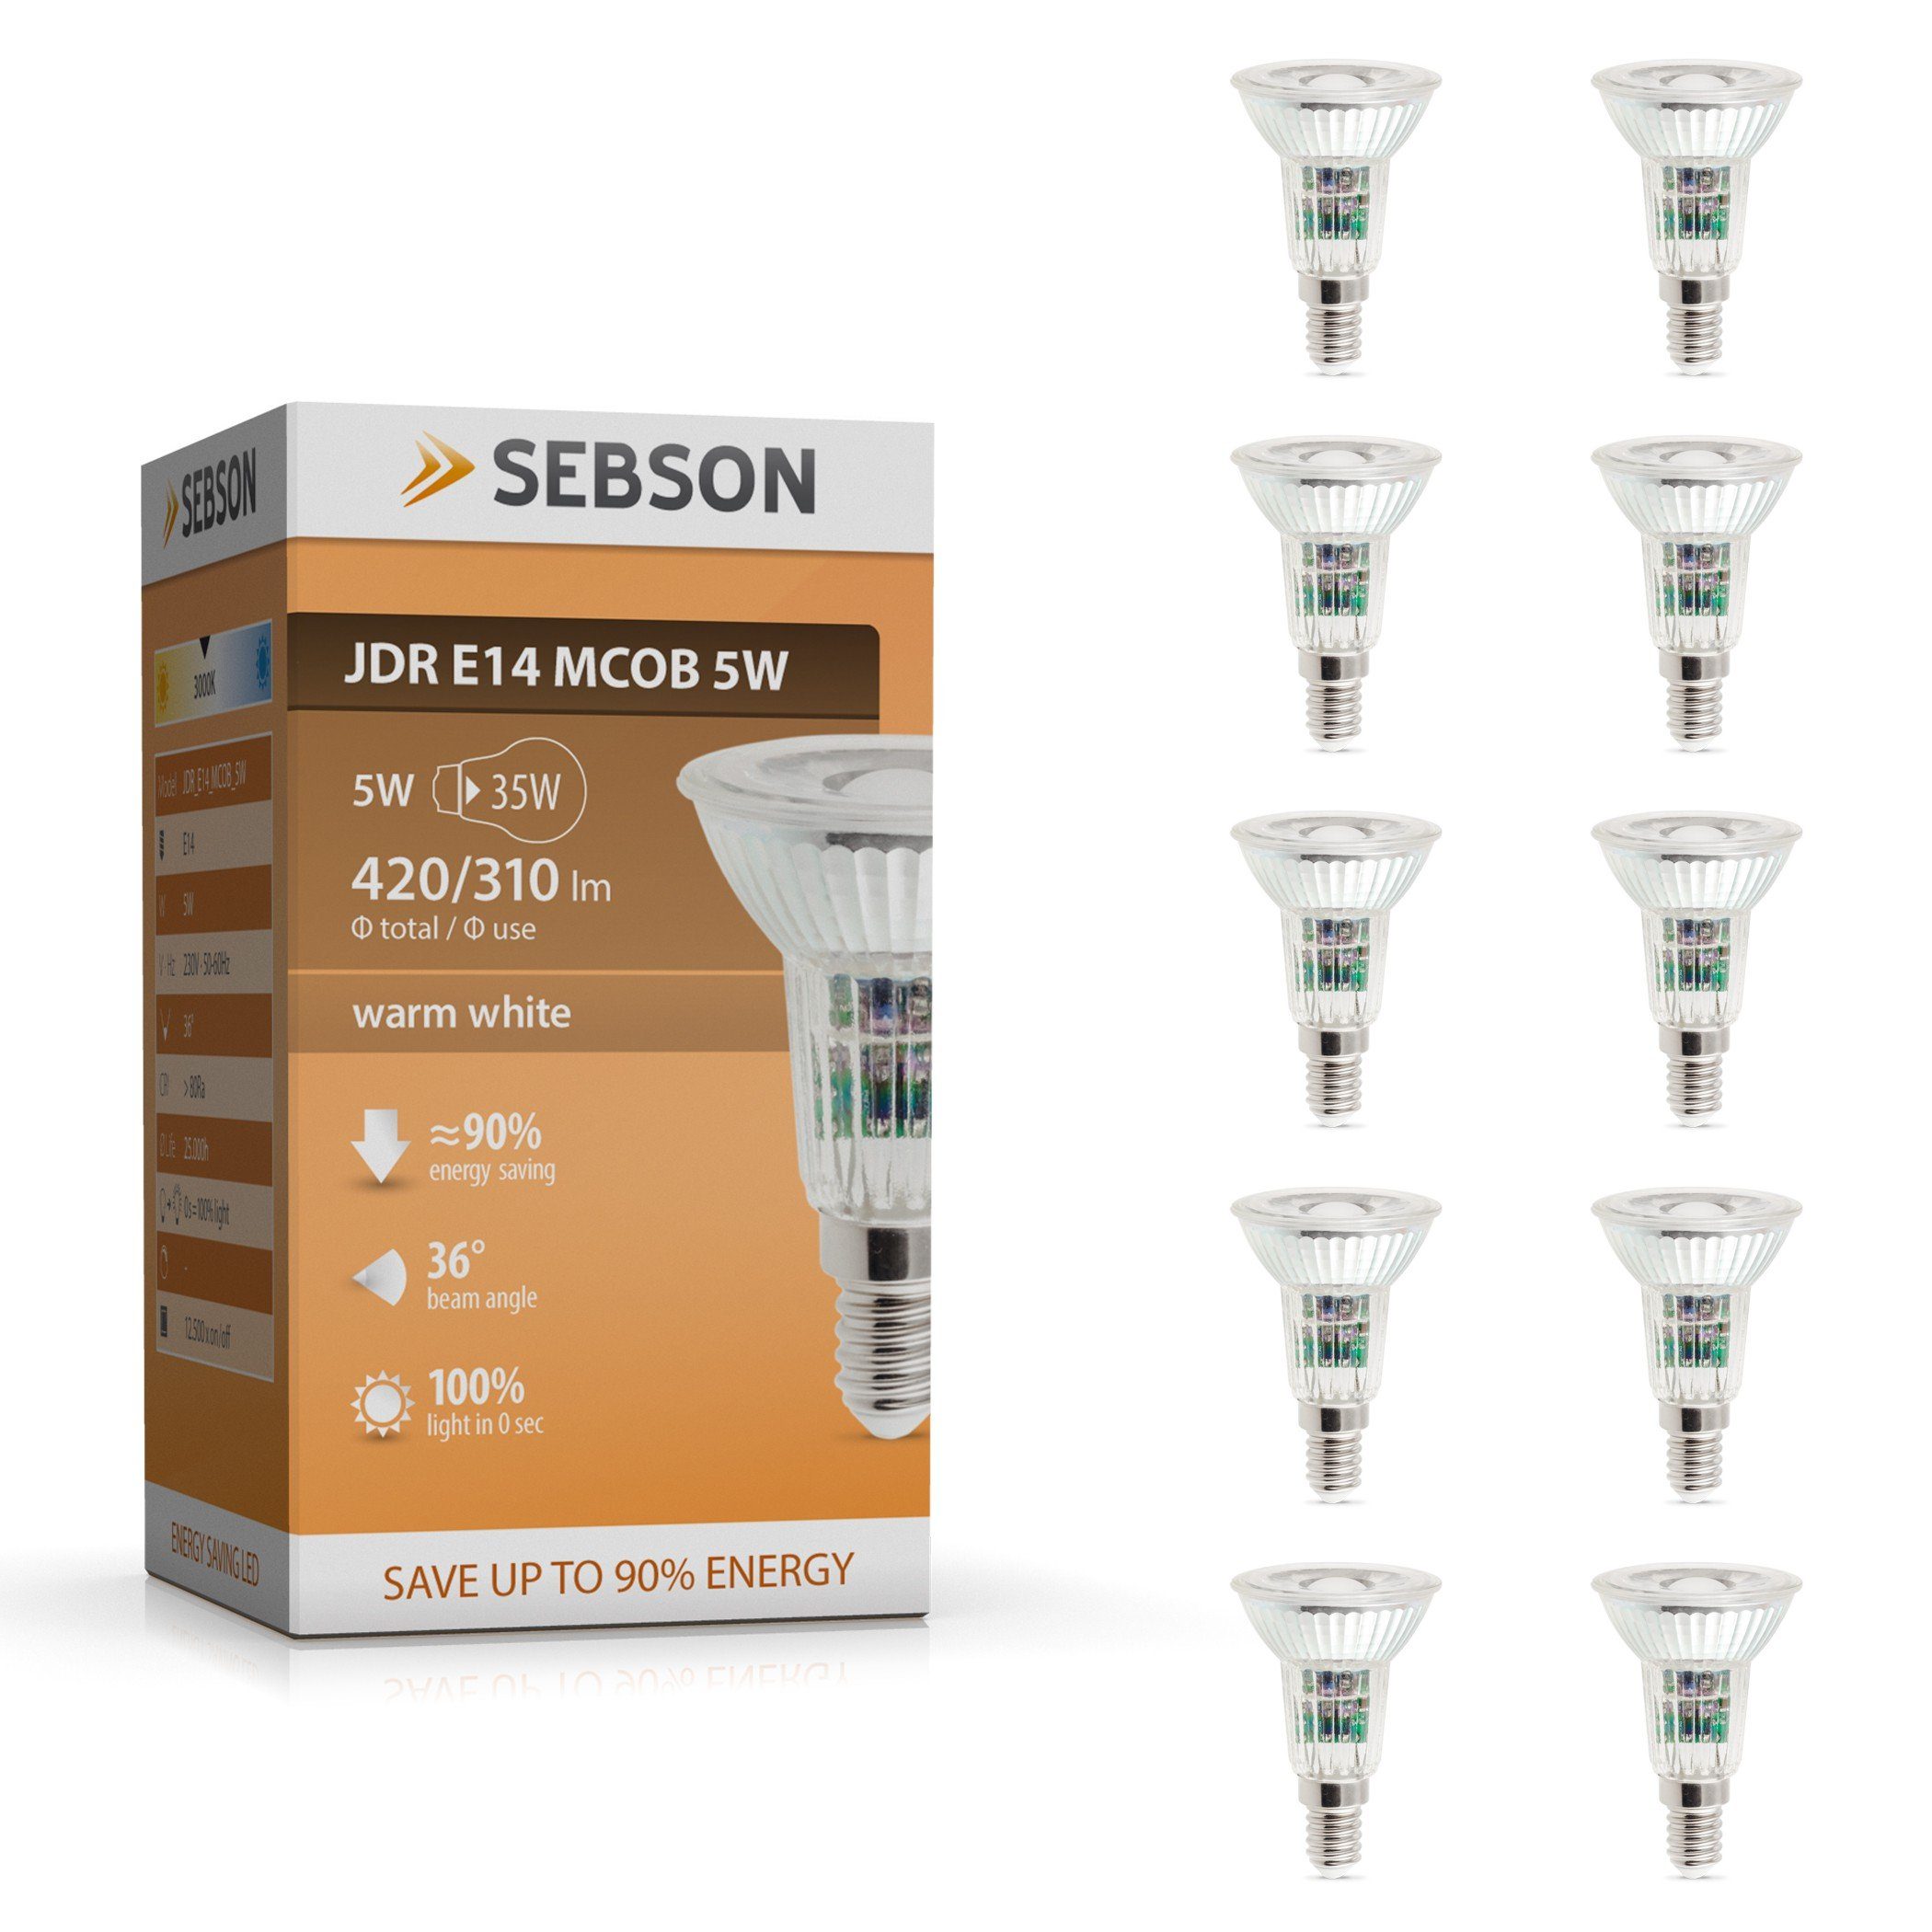 SEBSON LED-Leuchtmittel LED Lampe E14 5W warmweiß 420lm Spot 230V - 10er Pack